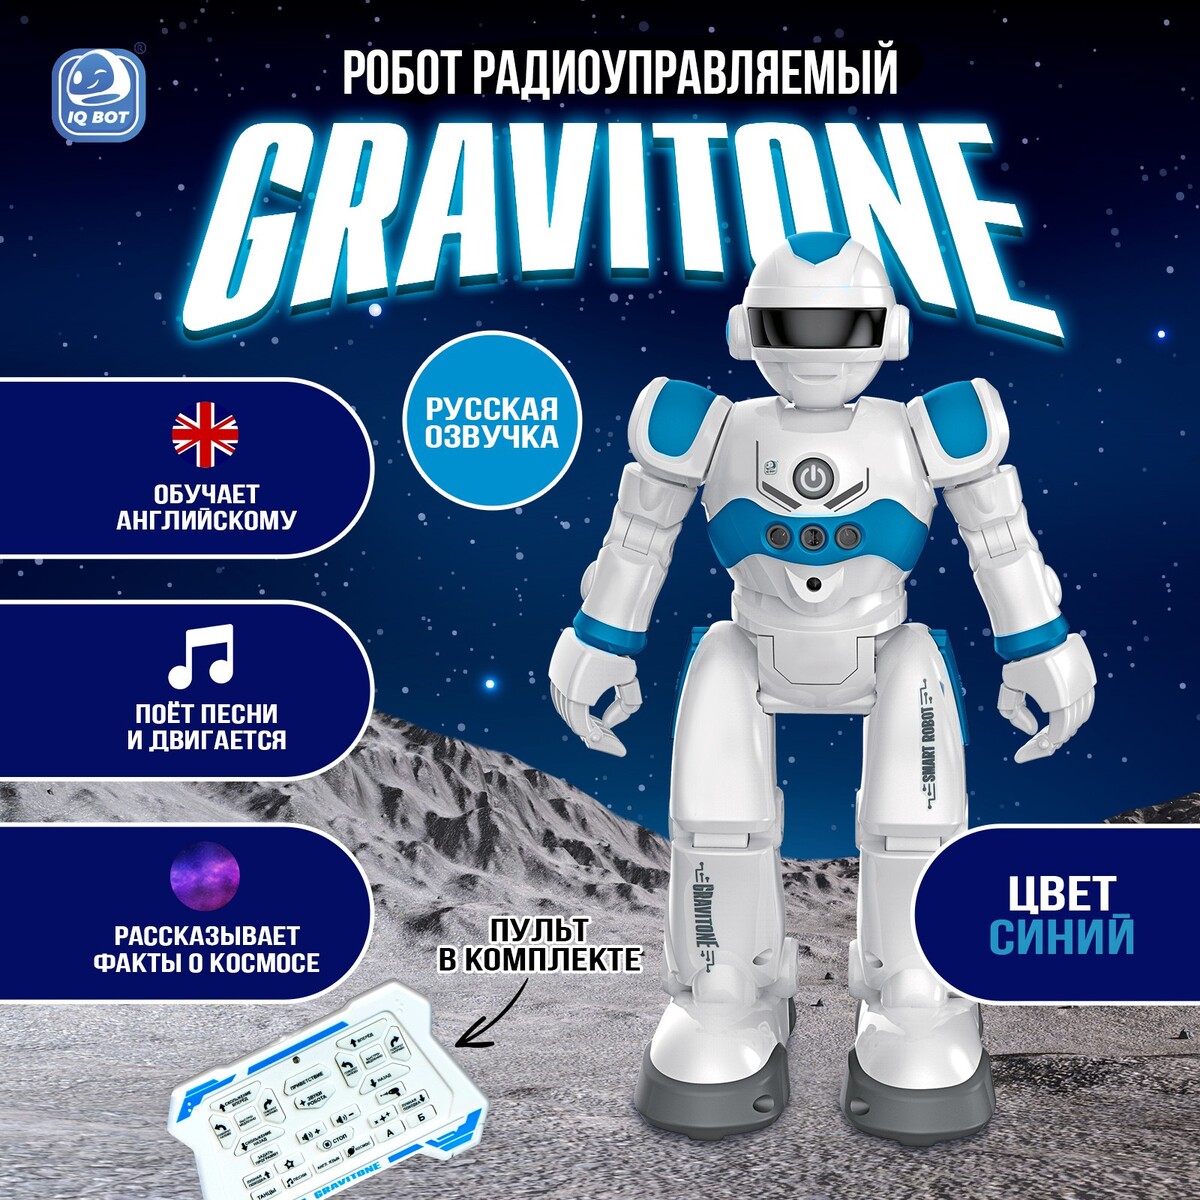 Робот радиоуправляемый iq bot gravitone, русское озвучивание, цвет синий радиоуправляемый робот roobo pd001sru